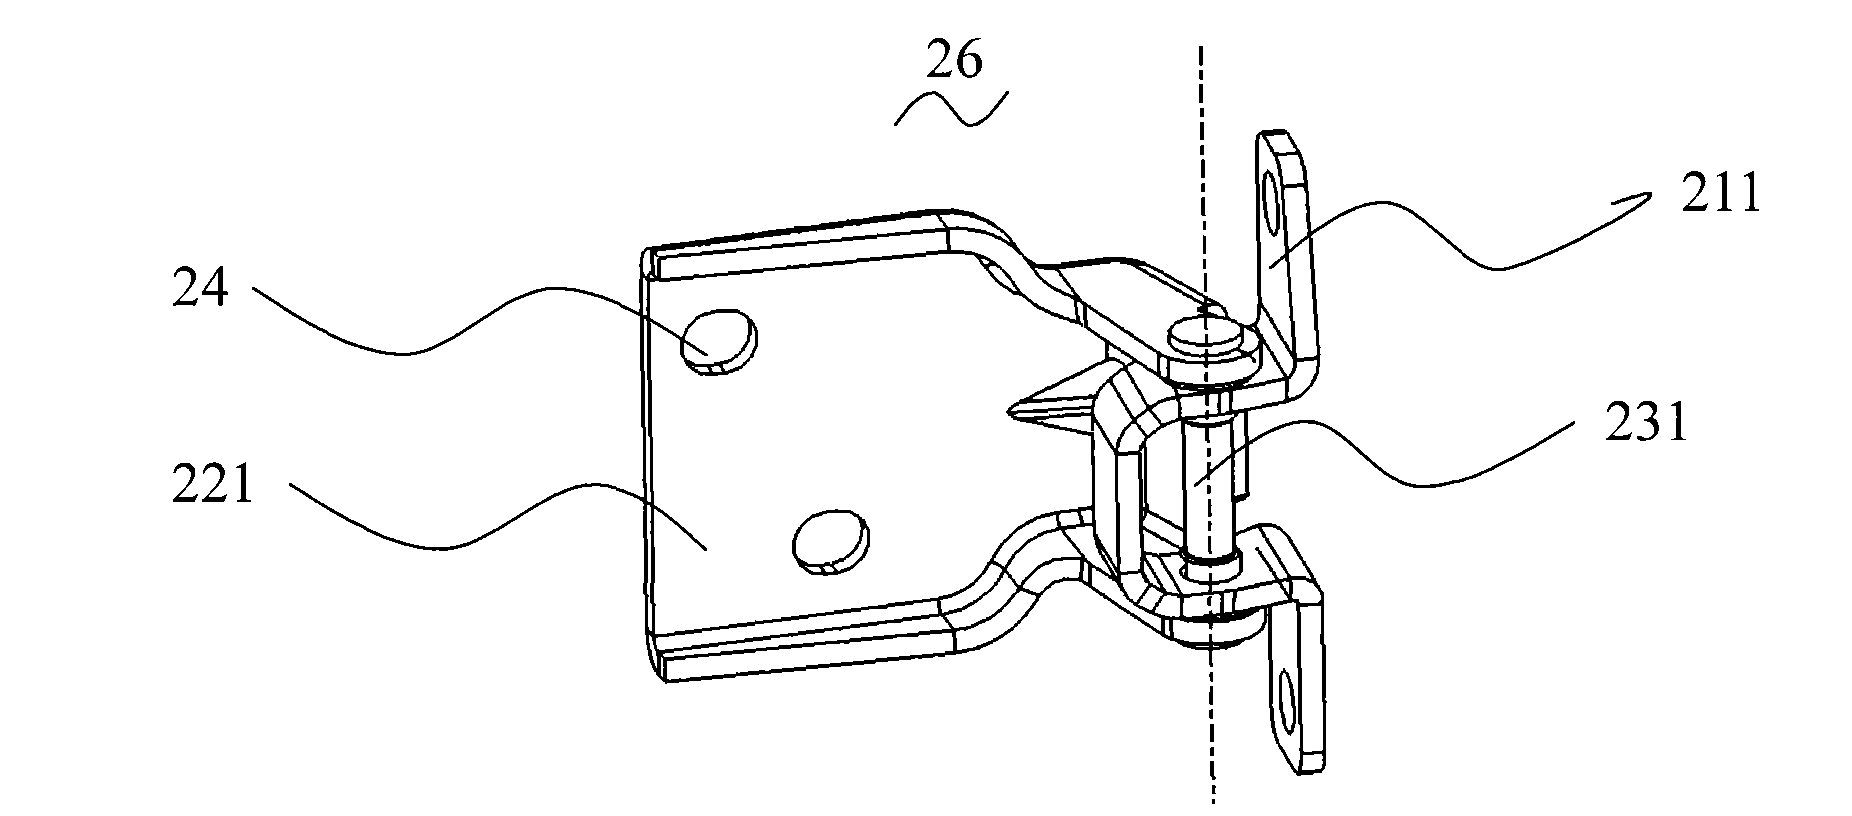 Door hinge mechanism used for vehicles